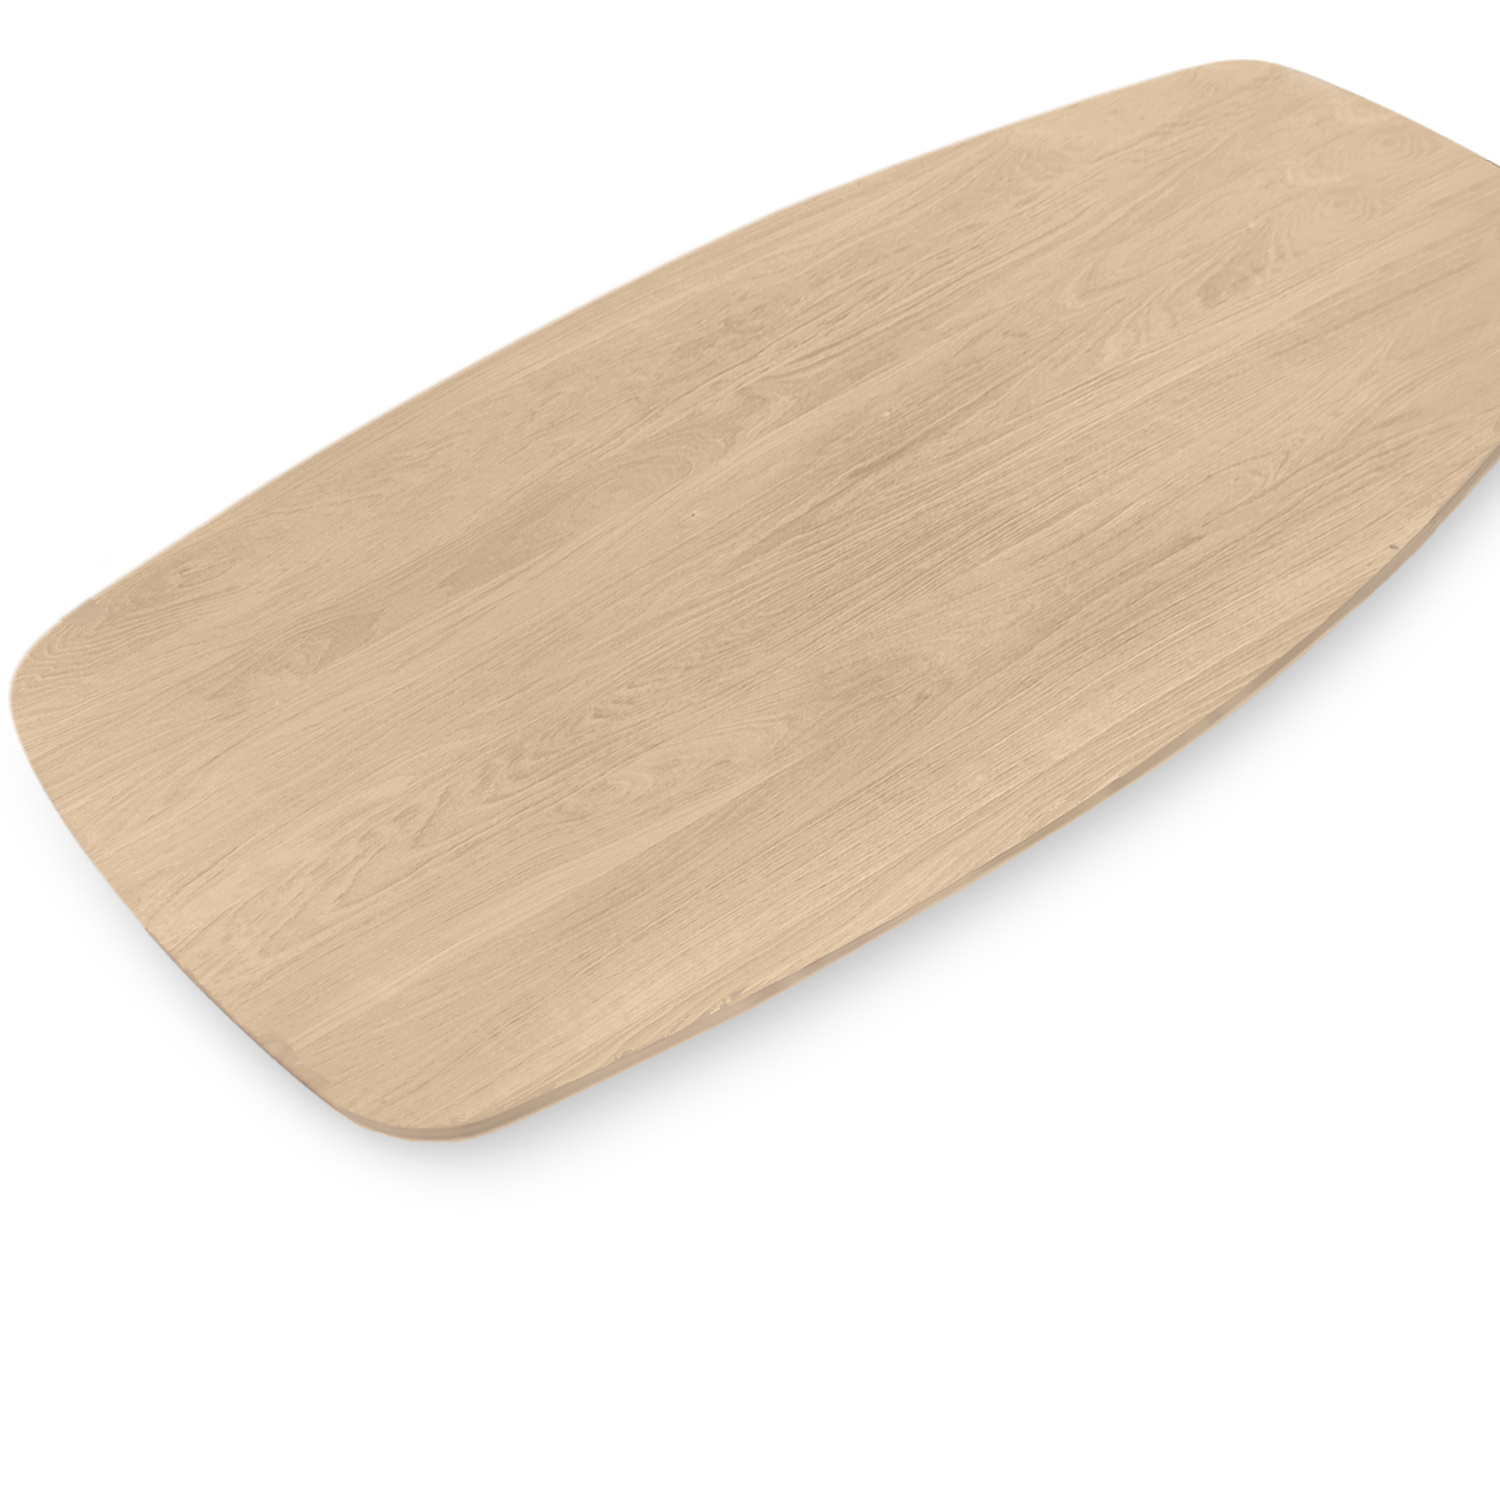  Tischplatte Eiche dänisch-oval - 4 cm dick (1-Schicht) - Breite Lamellen (10 - 12 cm breit) - Eichenholz A-Qualität - Bootsform - verleimt & künstlich getrocknet (HF 8-12%) - verschiedene Größen